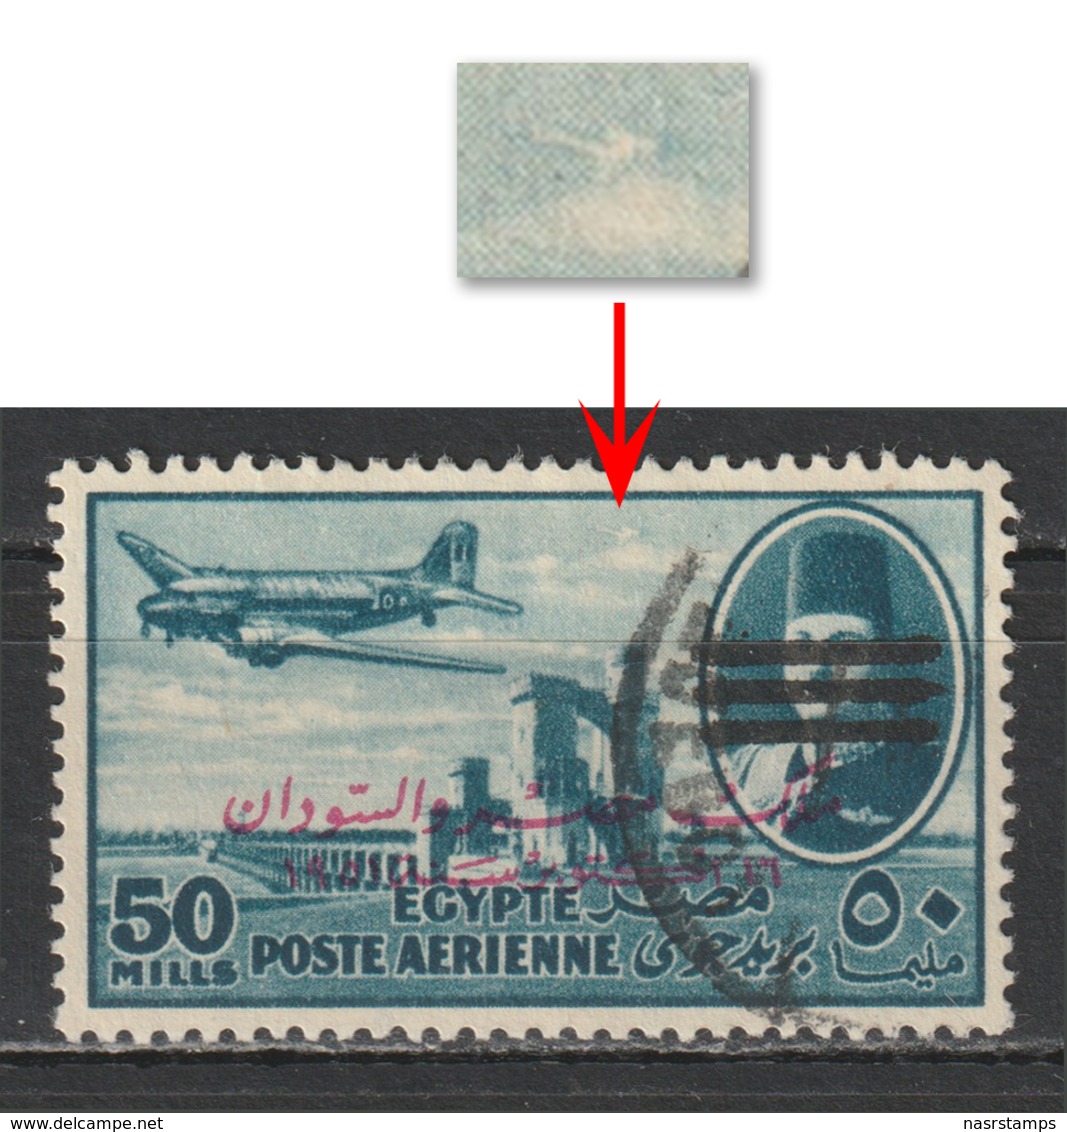 Egypt - 1953 - Rare - King Farouk - E & S - 3 Bars - 50 M - In The Sky - Used - Nile Post Catalog ( A72a8 ) - Nuovi